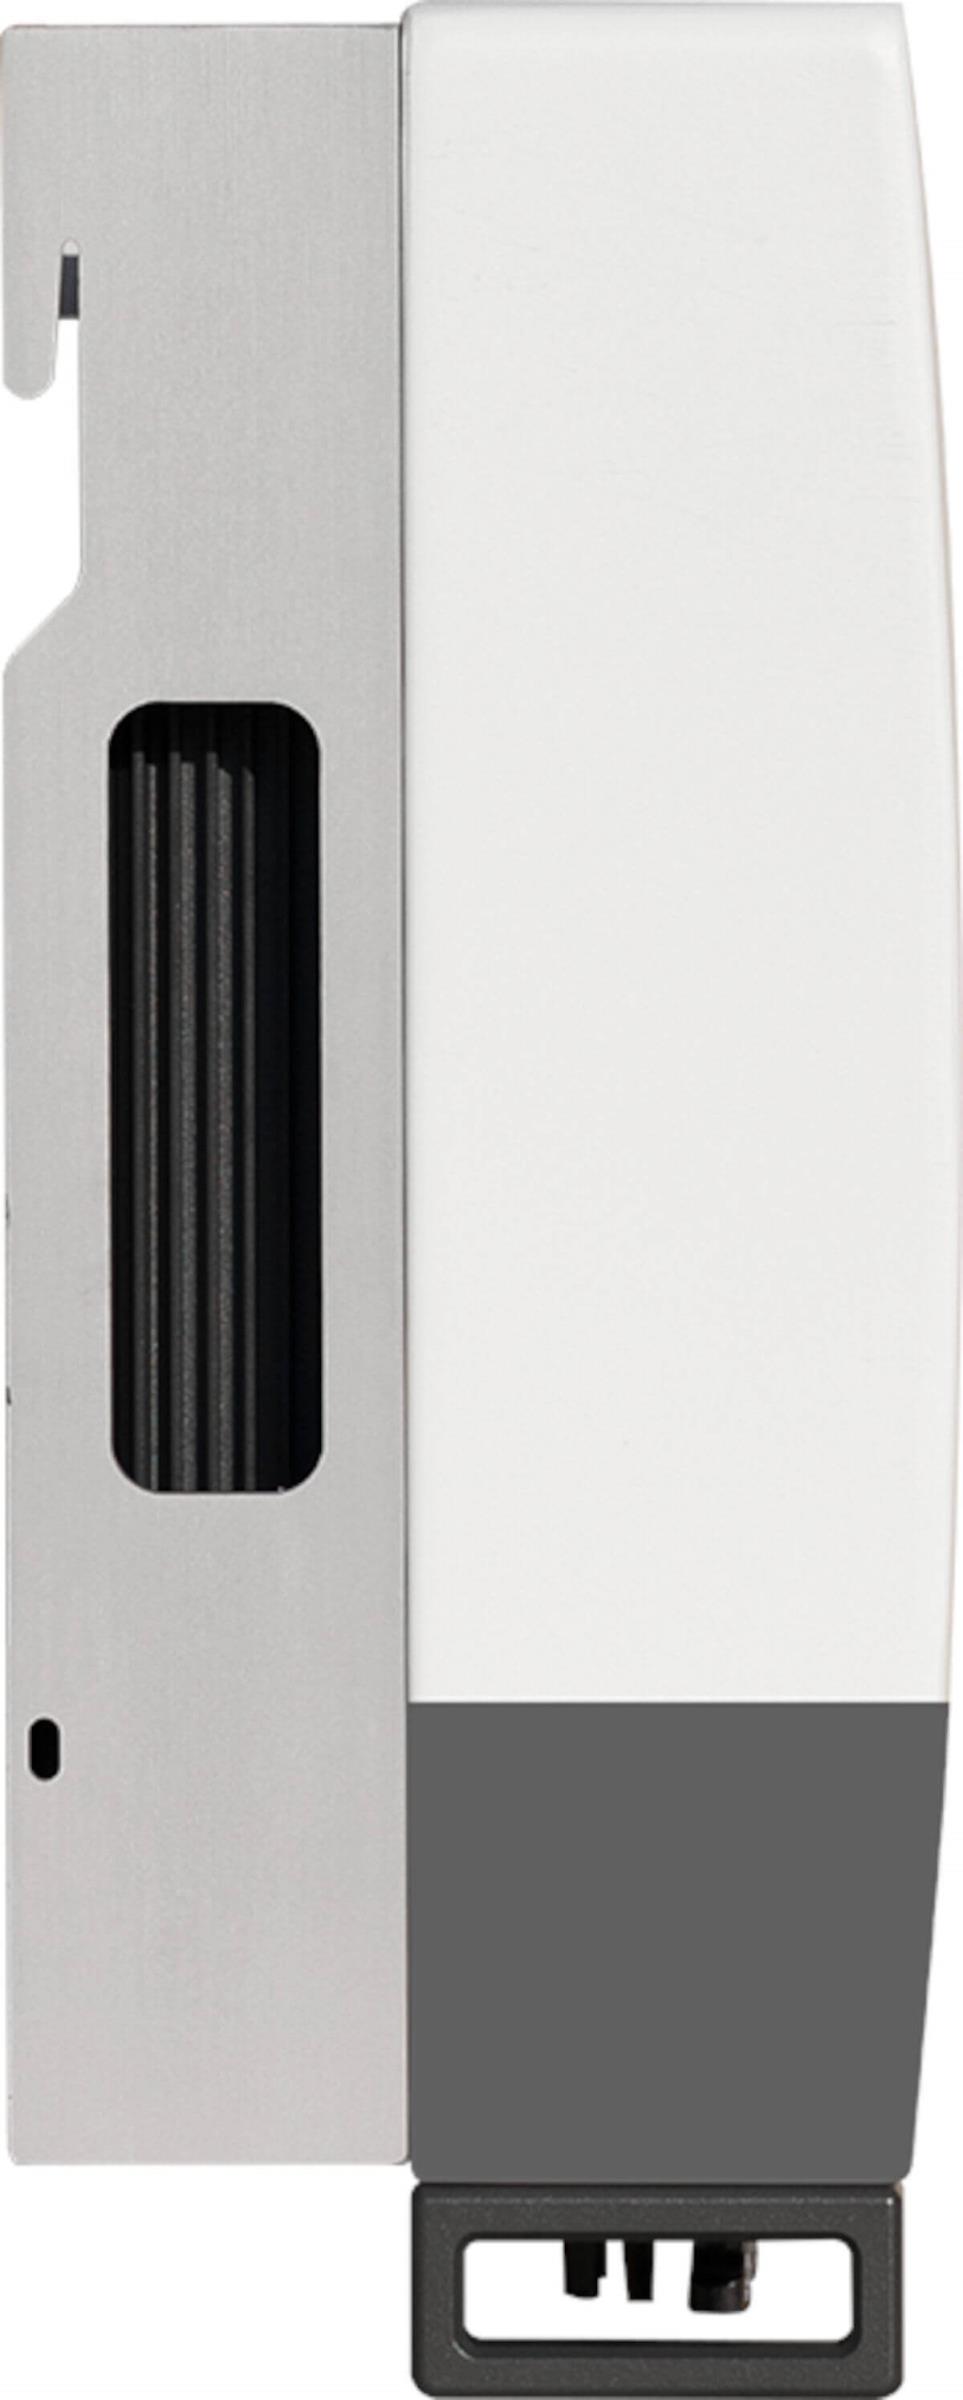 Solis Hybrid-Wechselrichter RHI-3P10K, Seitenansicht, auf weißem Hintergrund